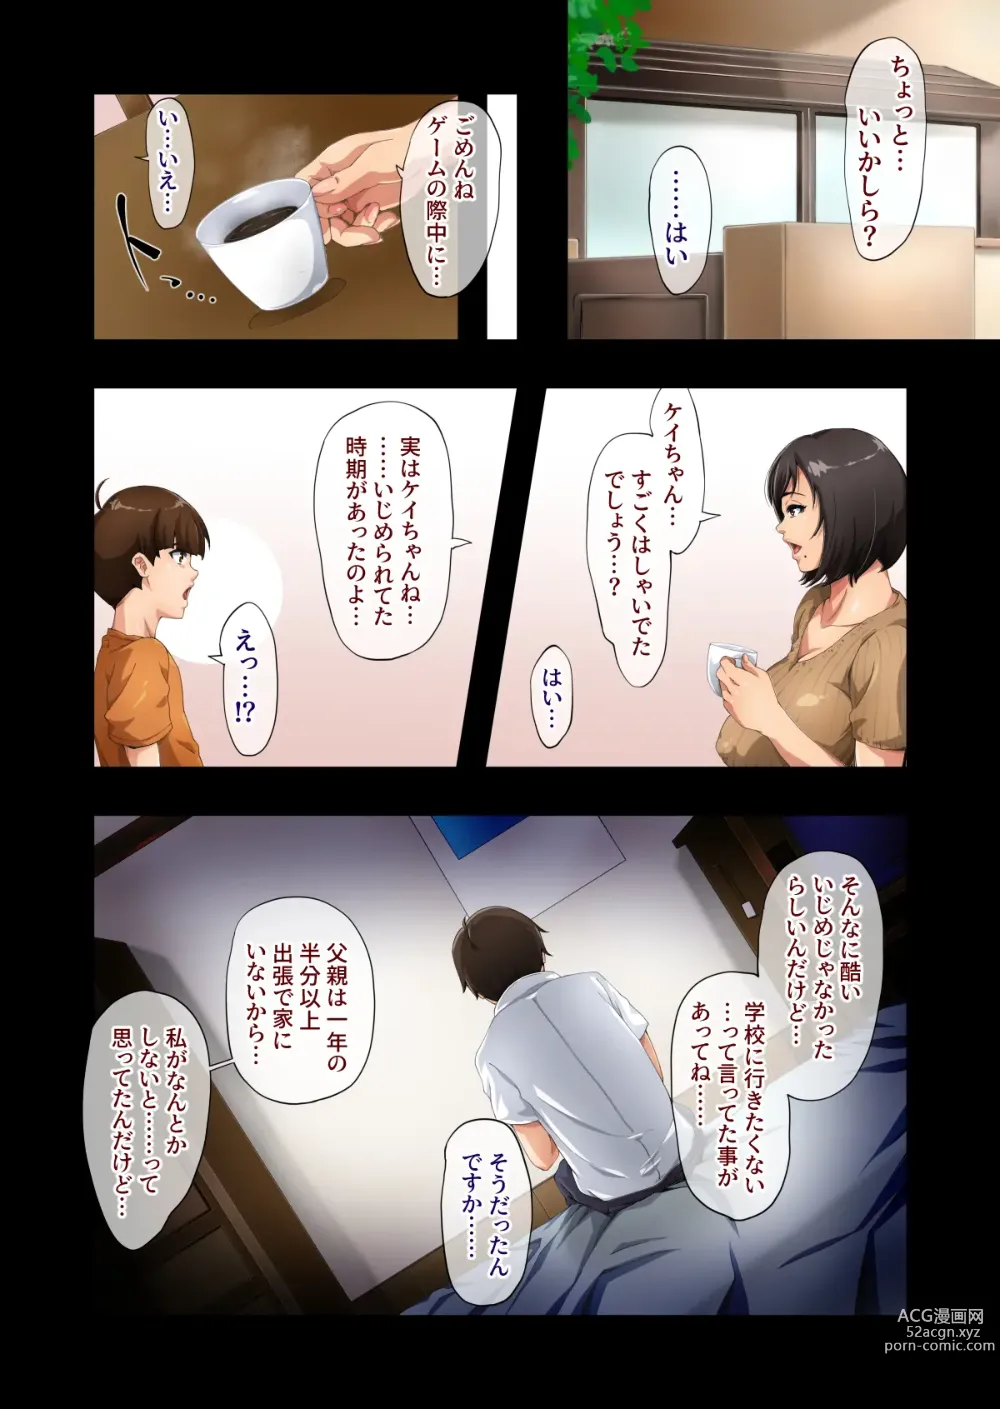 Page 3 of doujinshi Besuto Furendo 〜 Tomodachi no Haha 〜